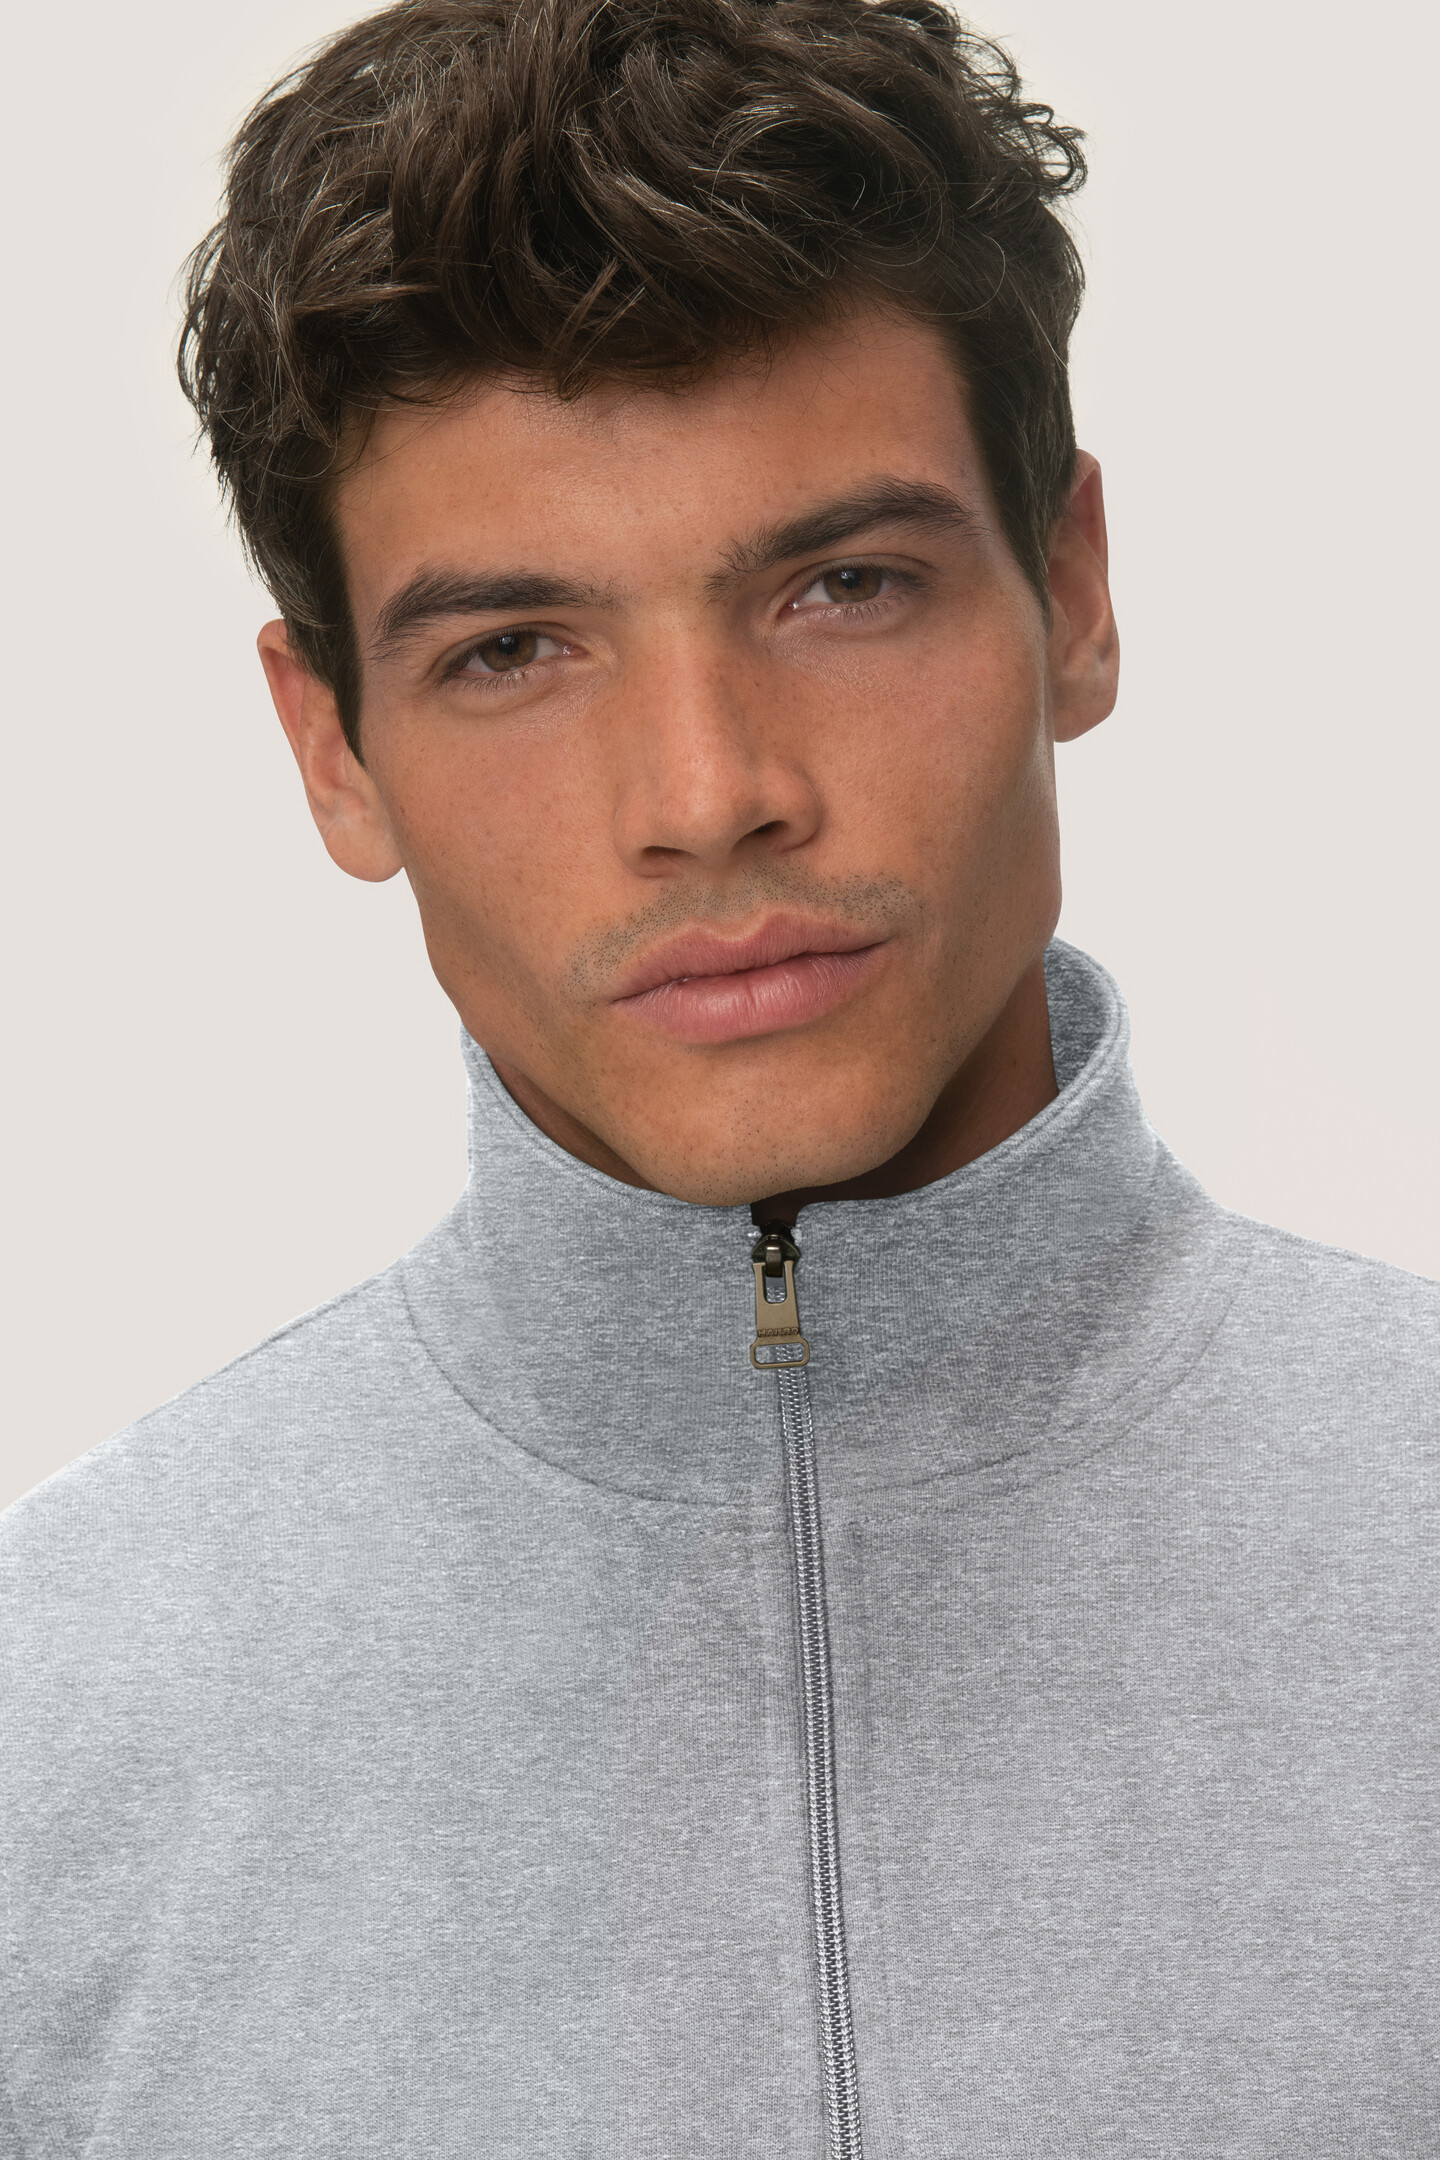 HAKRO Zip-Sweatshirt 451 Premium